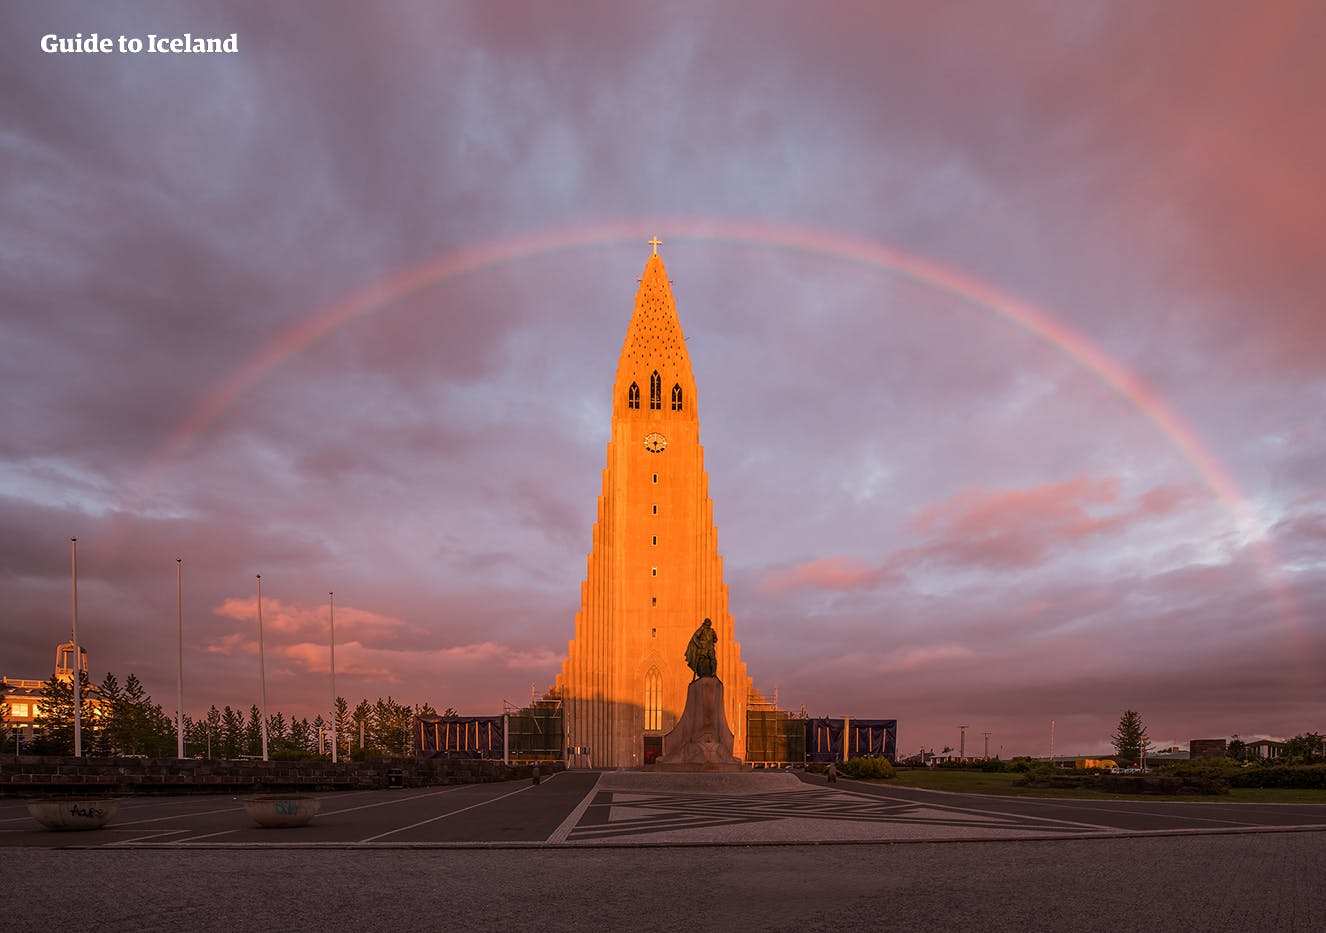 冰岛首都雷克雅未克哈尔格林姆斯大教堂的设计灵感来自斯卡夫塔山地区的斯瓦提瀑布。